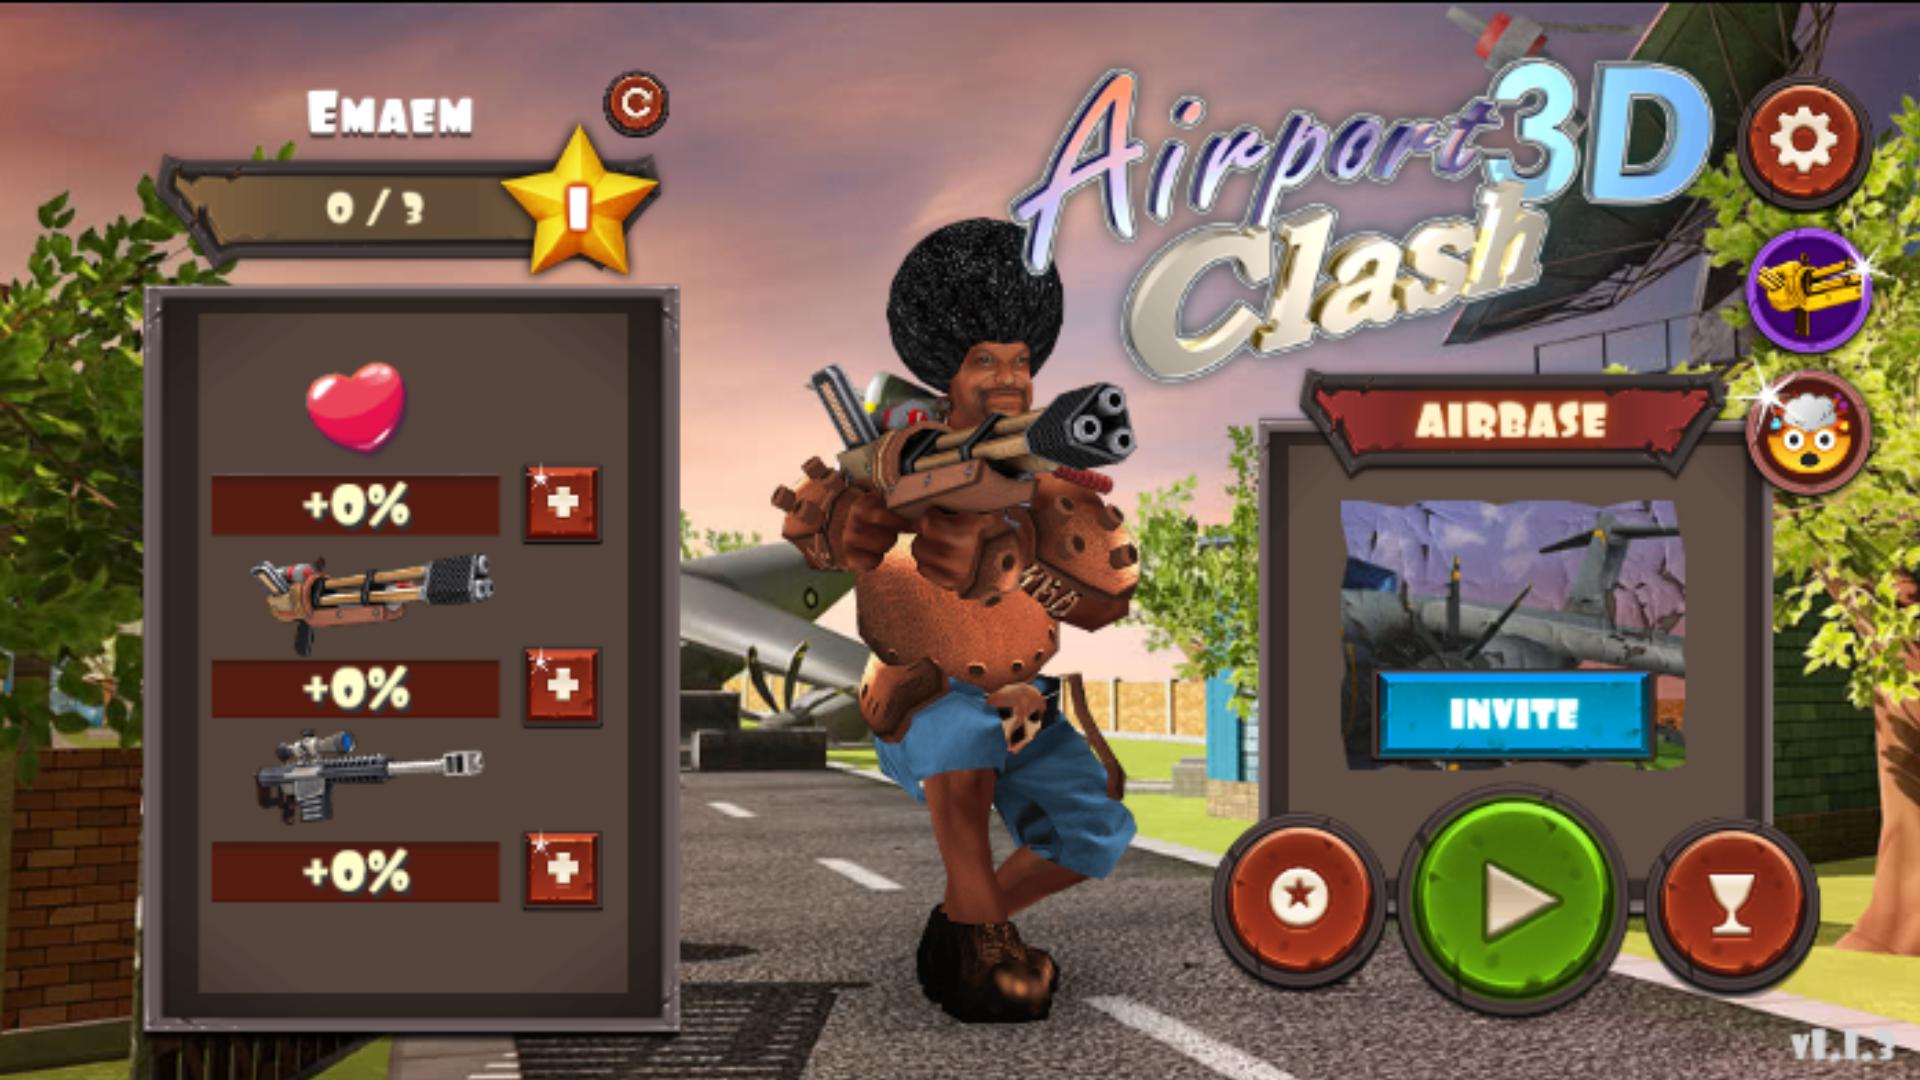 Rocket Clash 3D Third person shooter multiplayer 1.3.14 Screenshot 24